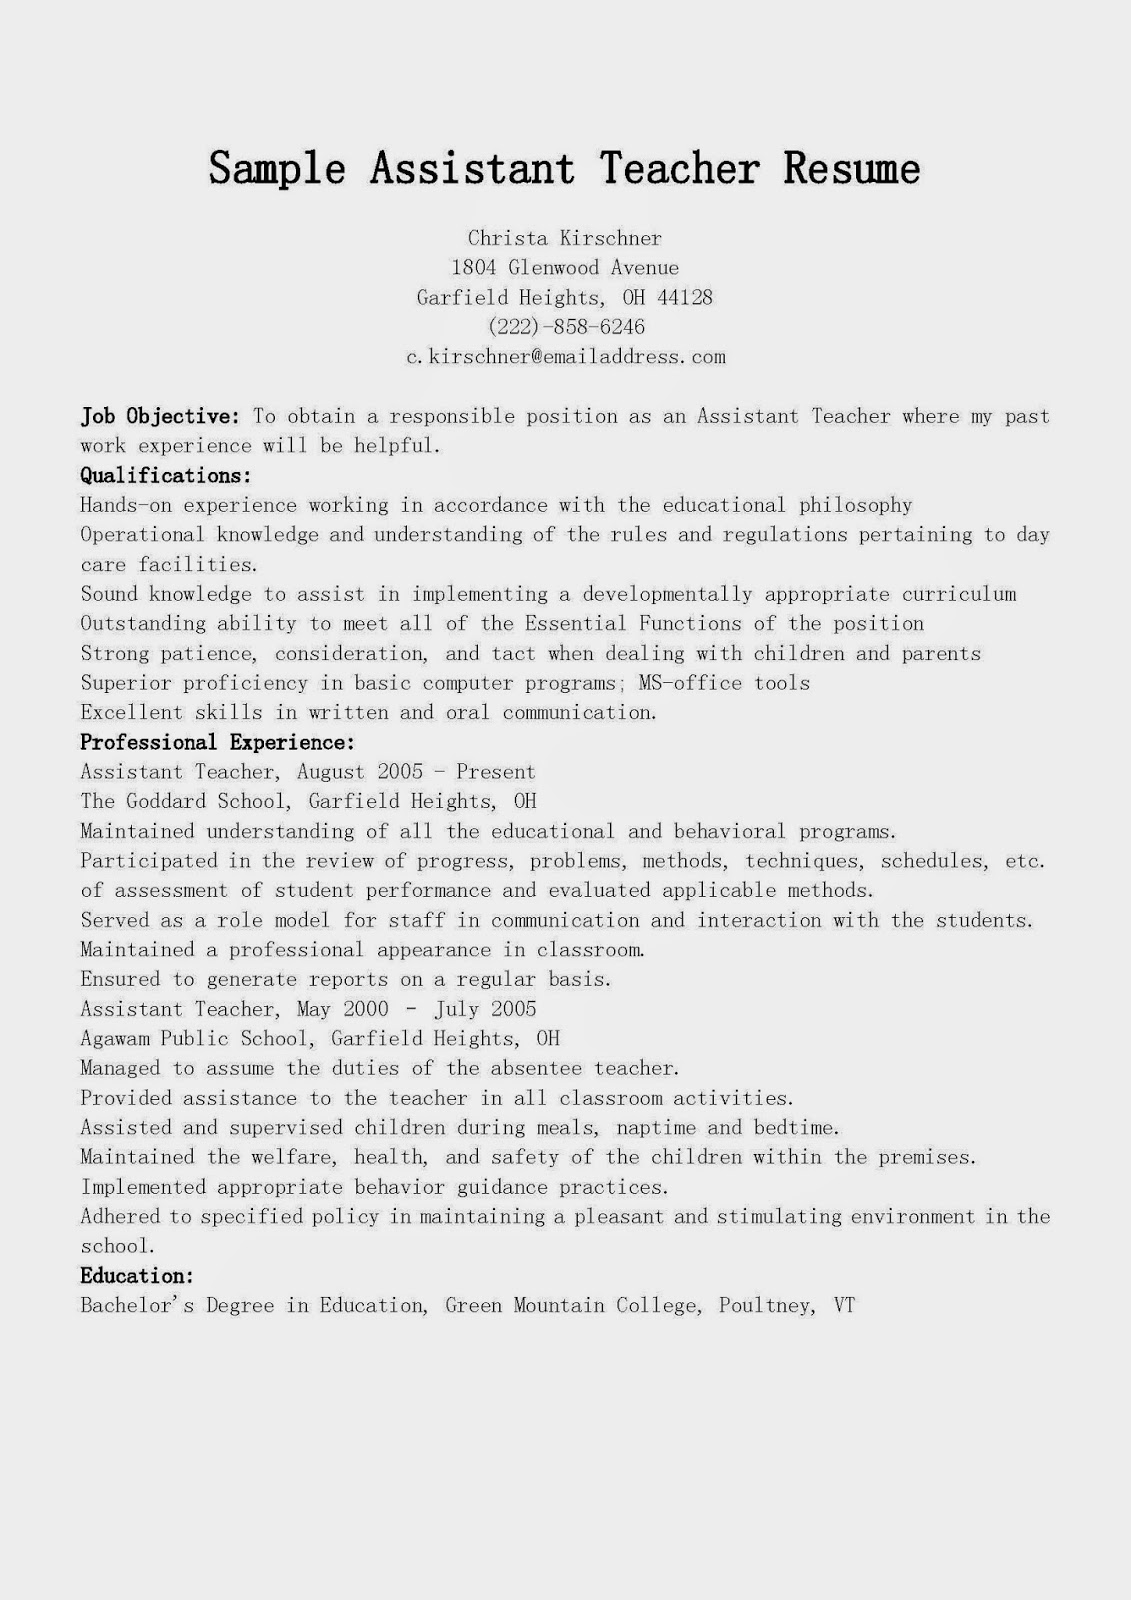 Sample resume for teachers assistant